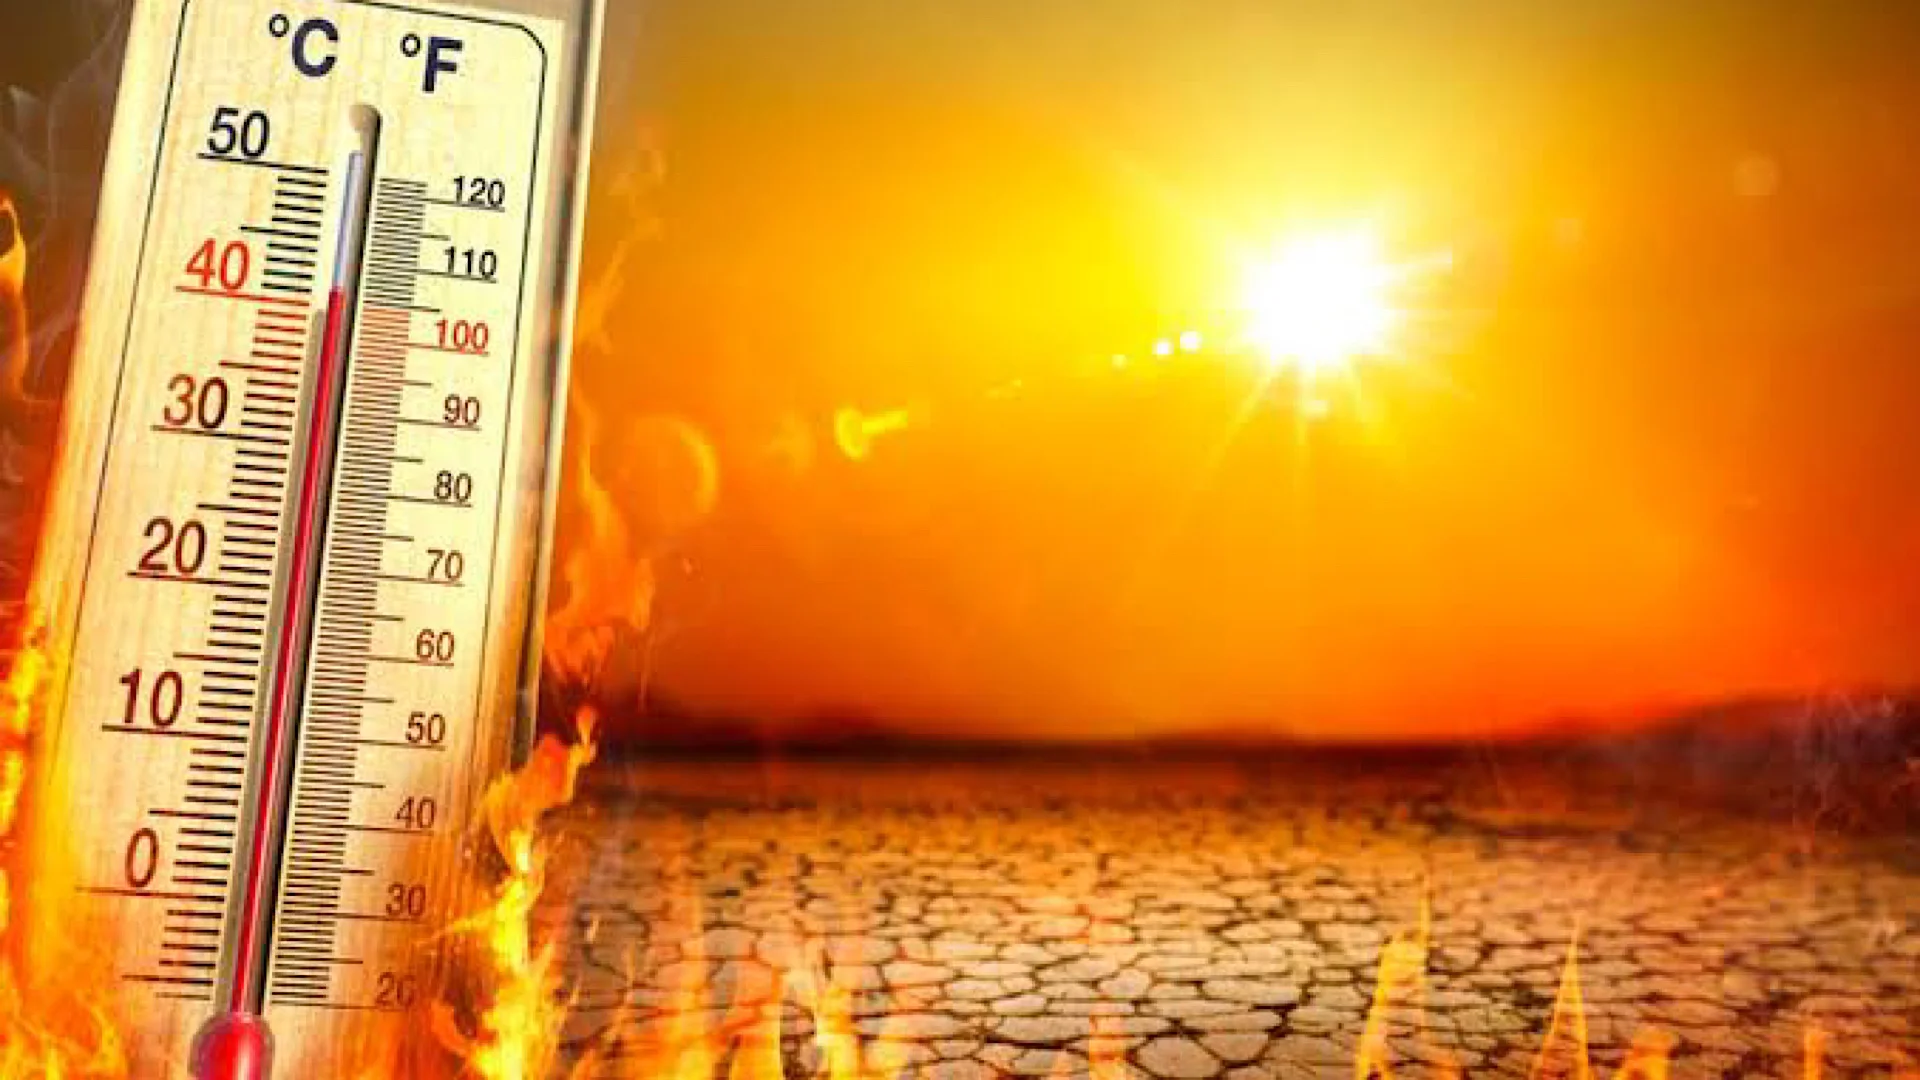 Did 568 people die due to the heatwave in Karachi?